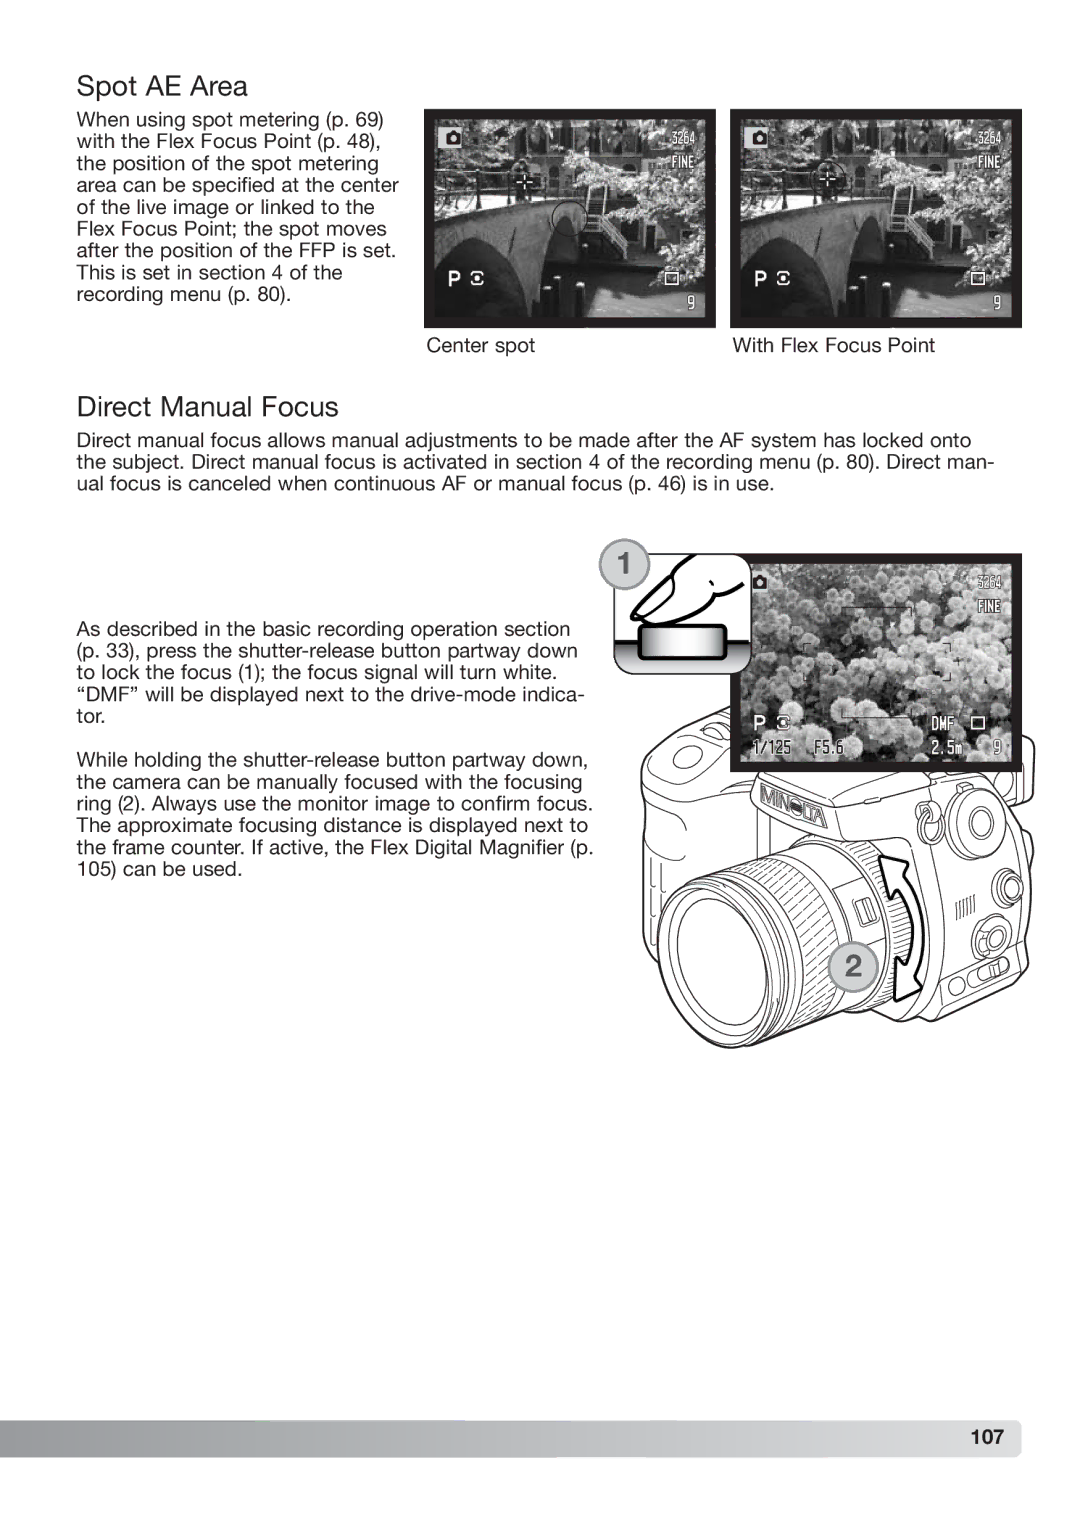 Konica Minolta DiMAGE_A2 instruction manual Spot AE Area, Direct Manual Focus, 107 